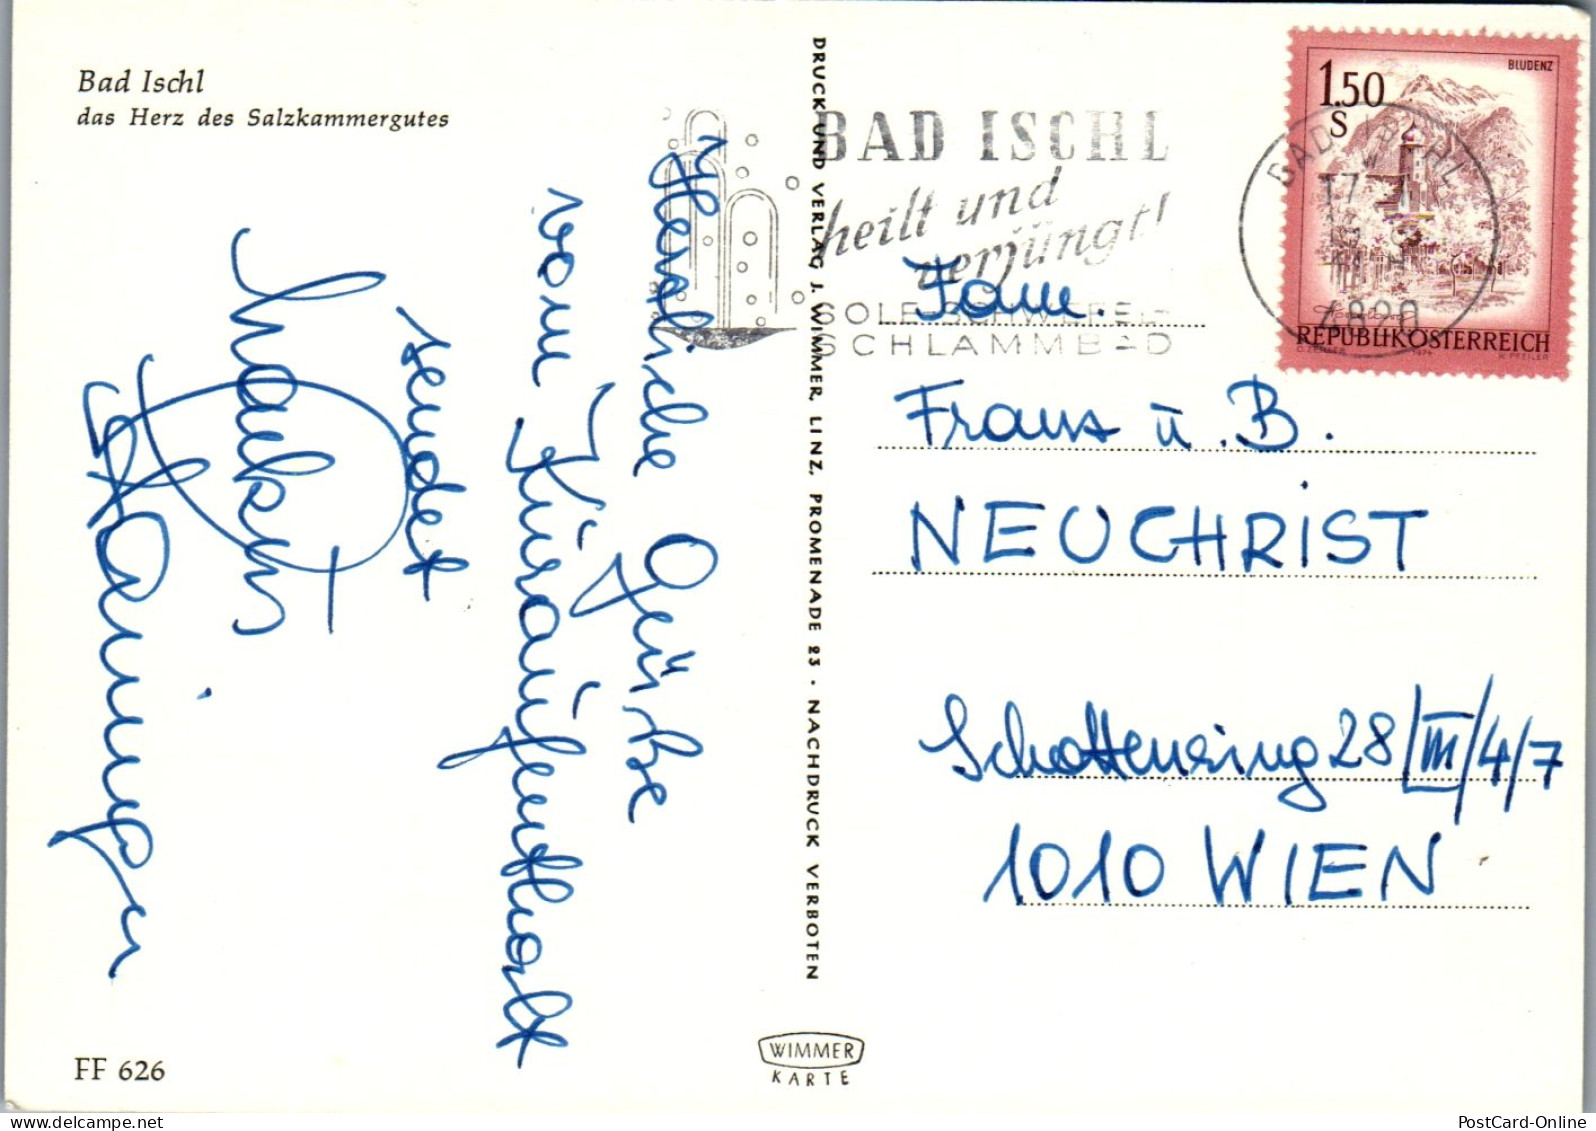 45261 - Oberösterreich - Bad Ischl , Mehrbildkarte - Gelaufen  - Bad Ischl